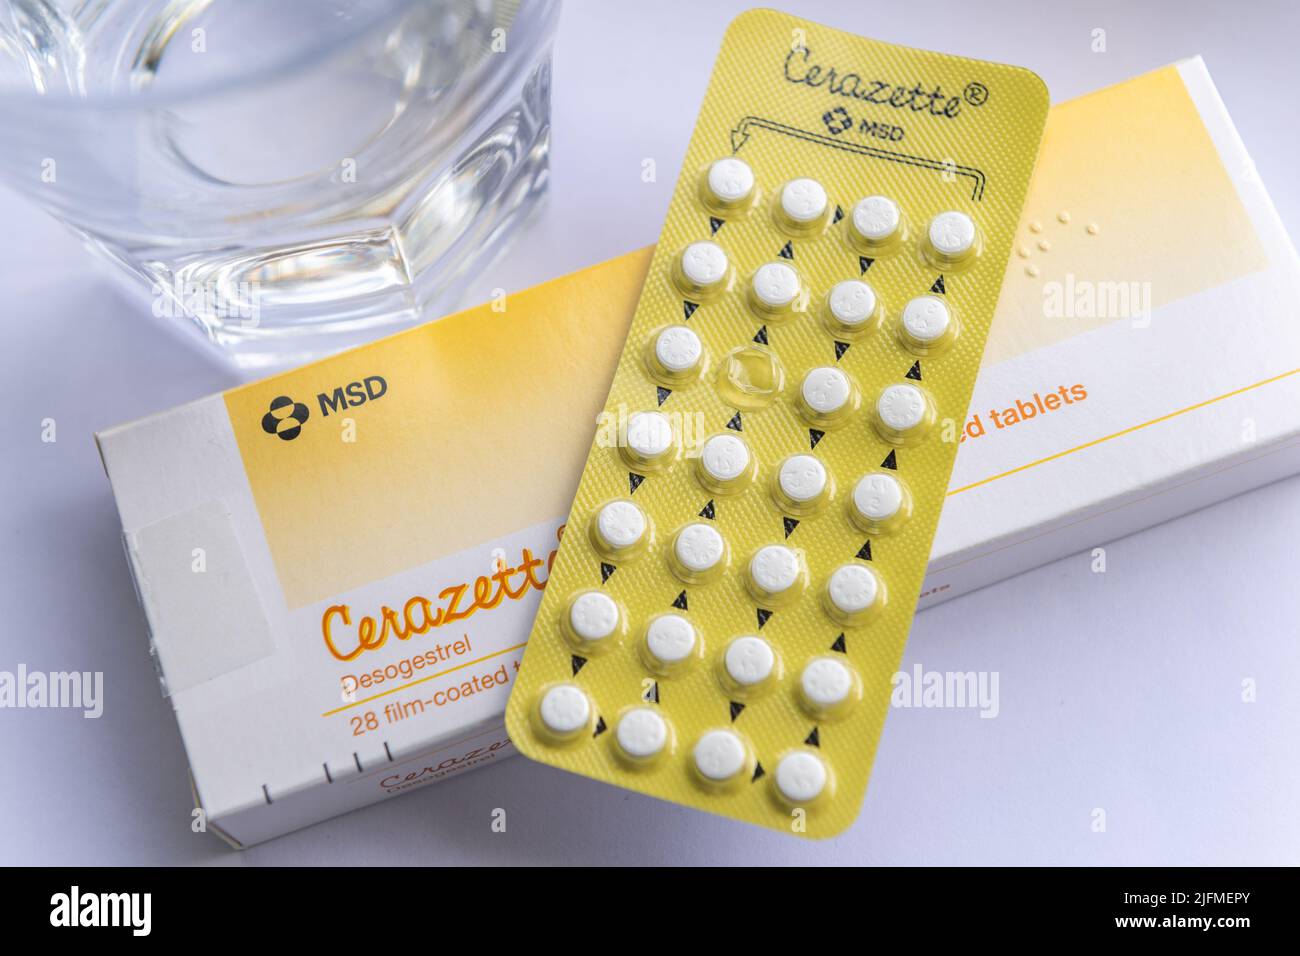 Cerazette Desogestrel scatola per compresse contraccettive, blister e un bicchiere d'acqua. QUESTA È UN'IMMAGINE, NON IL PRODOTTO. Foto Stock